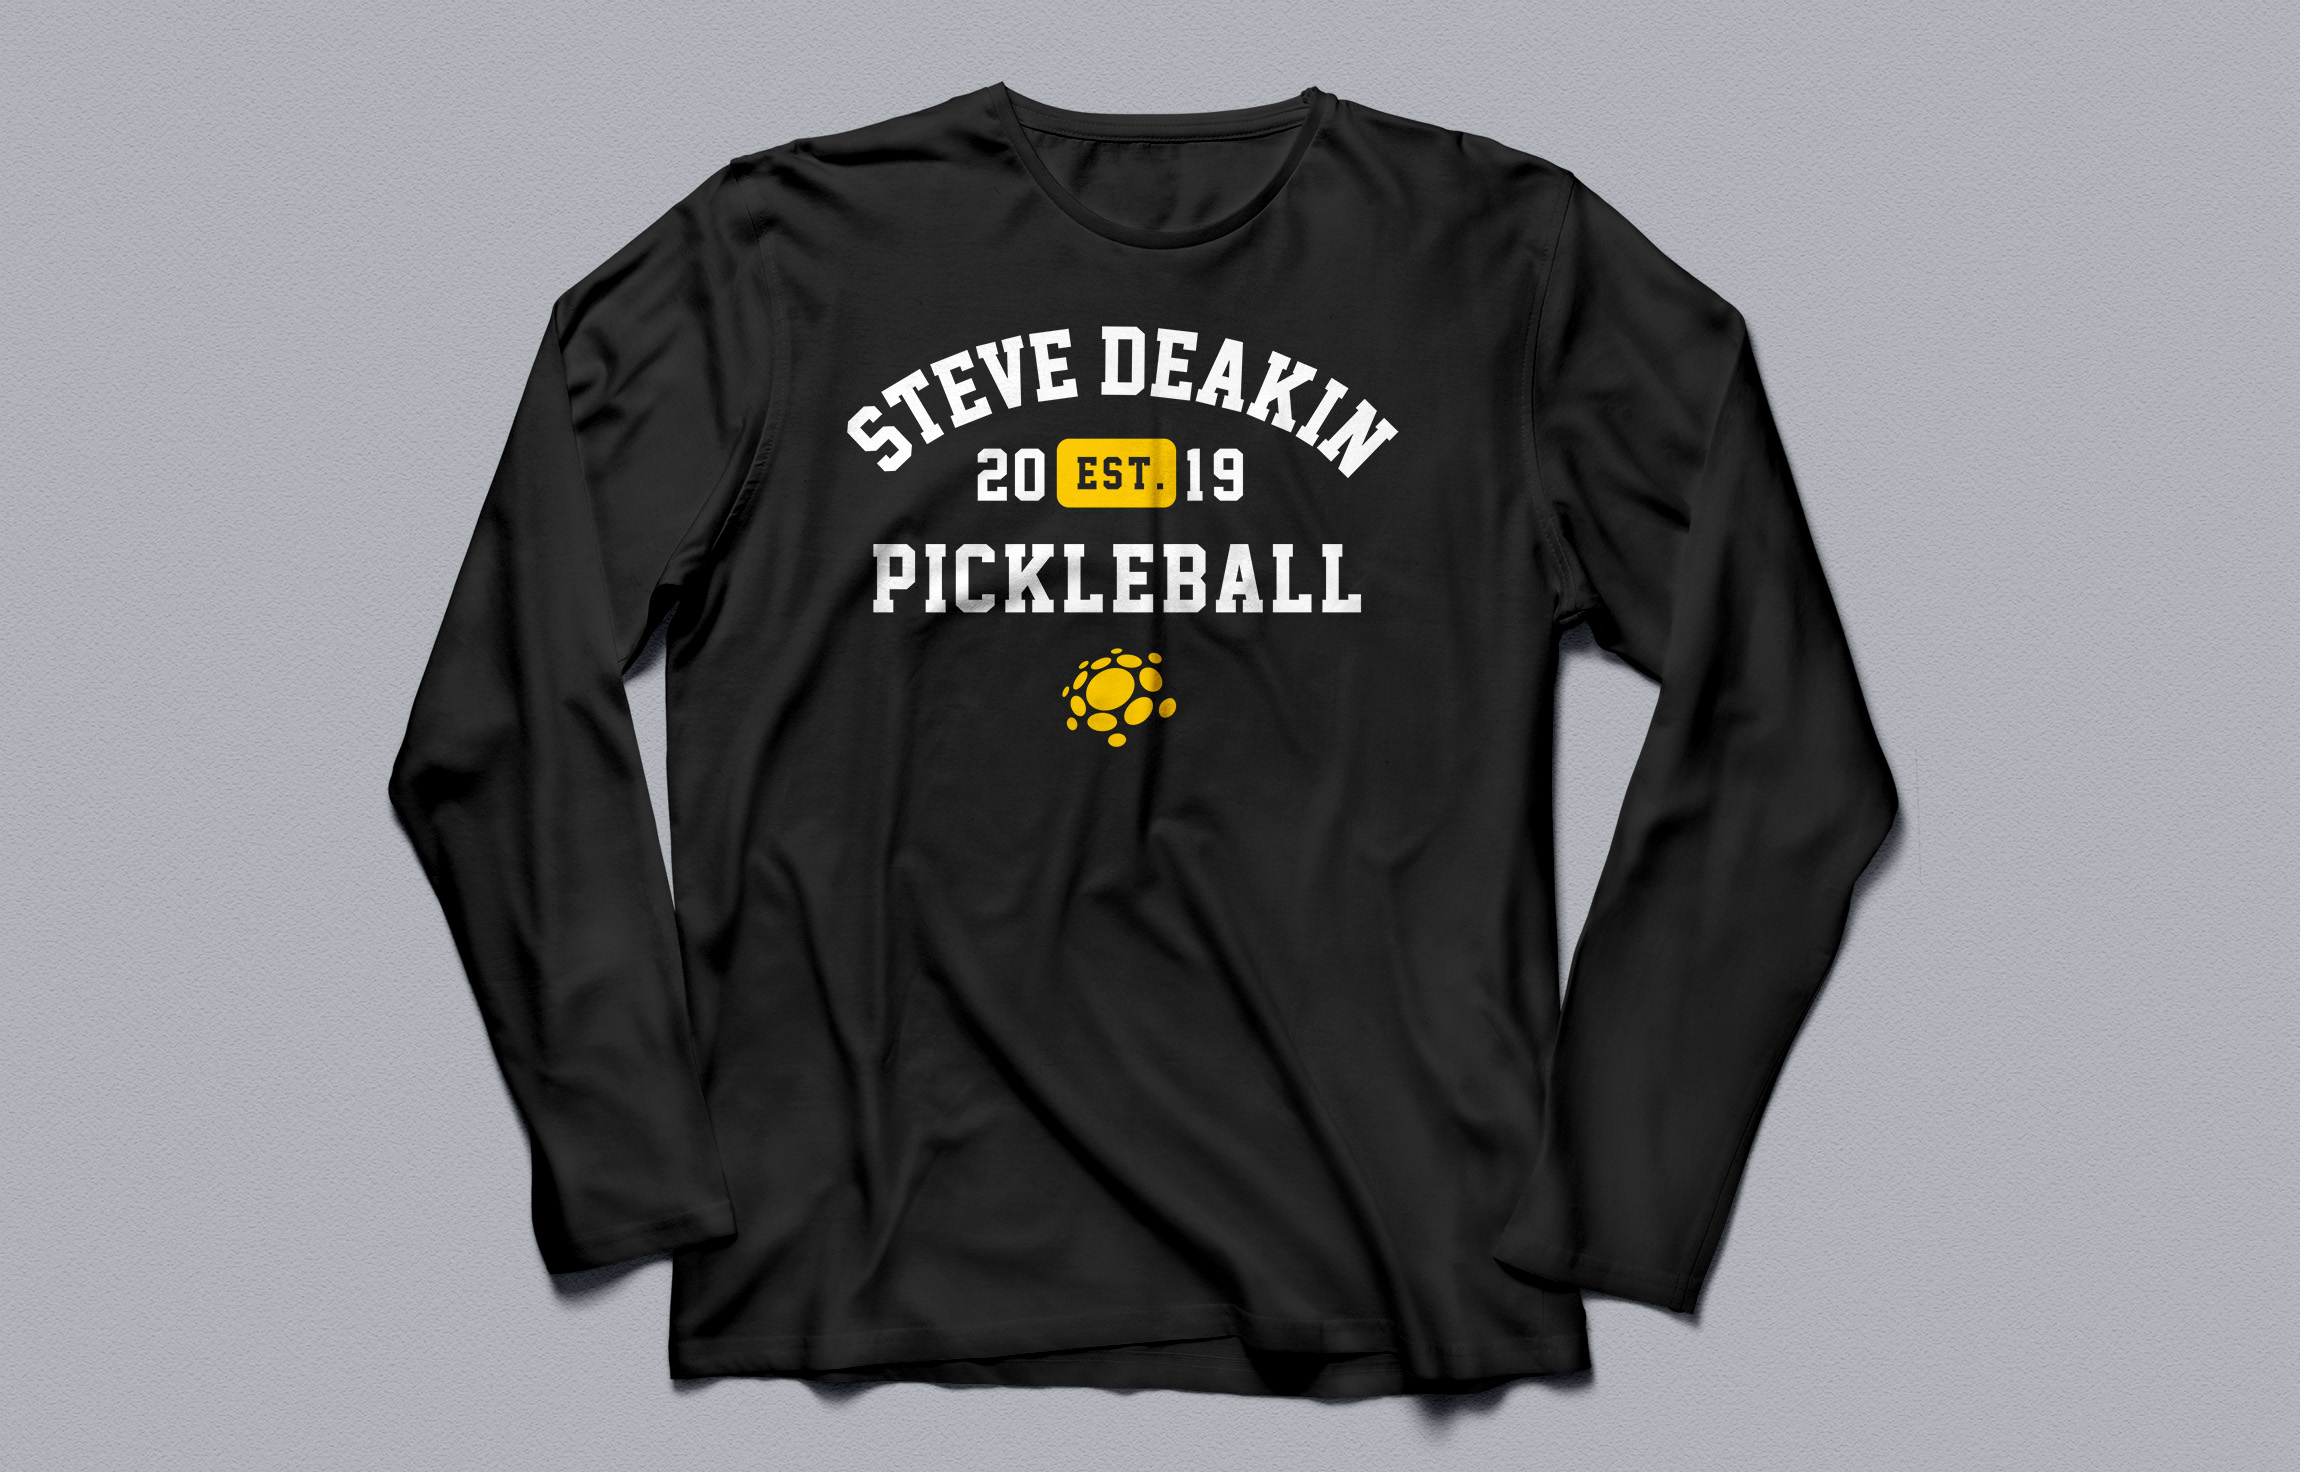 Steve Deakin Pickleball - T-Shirt Design